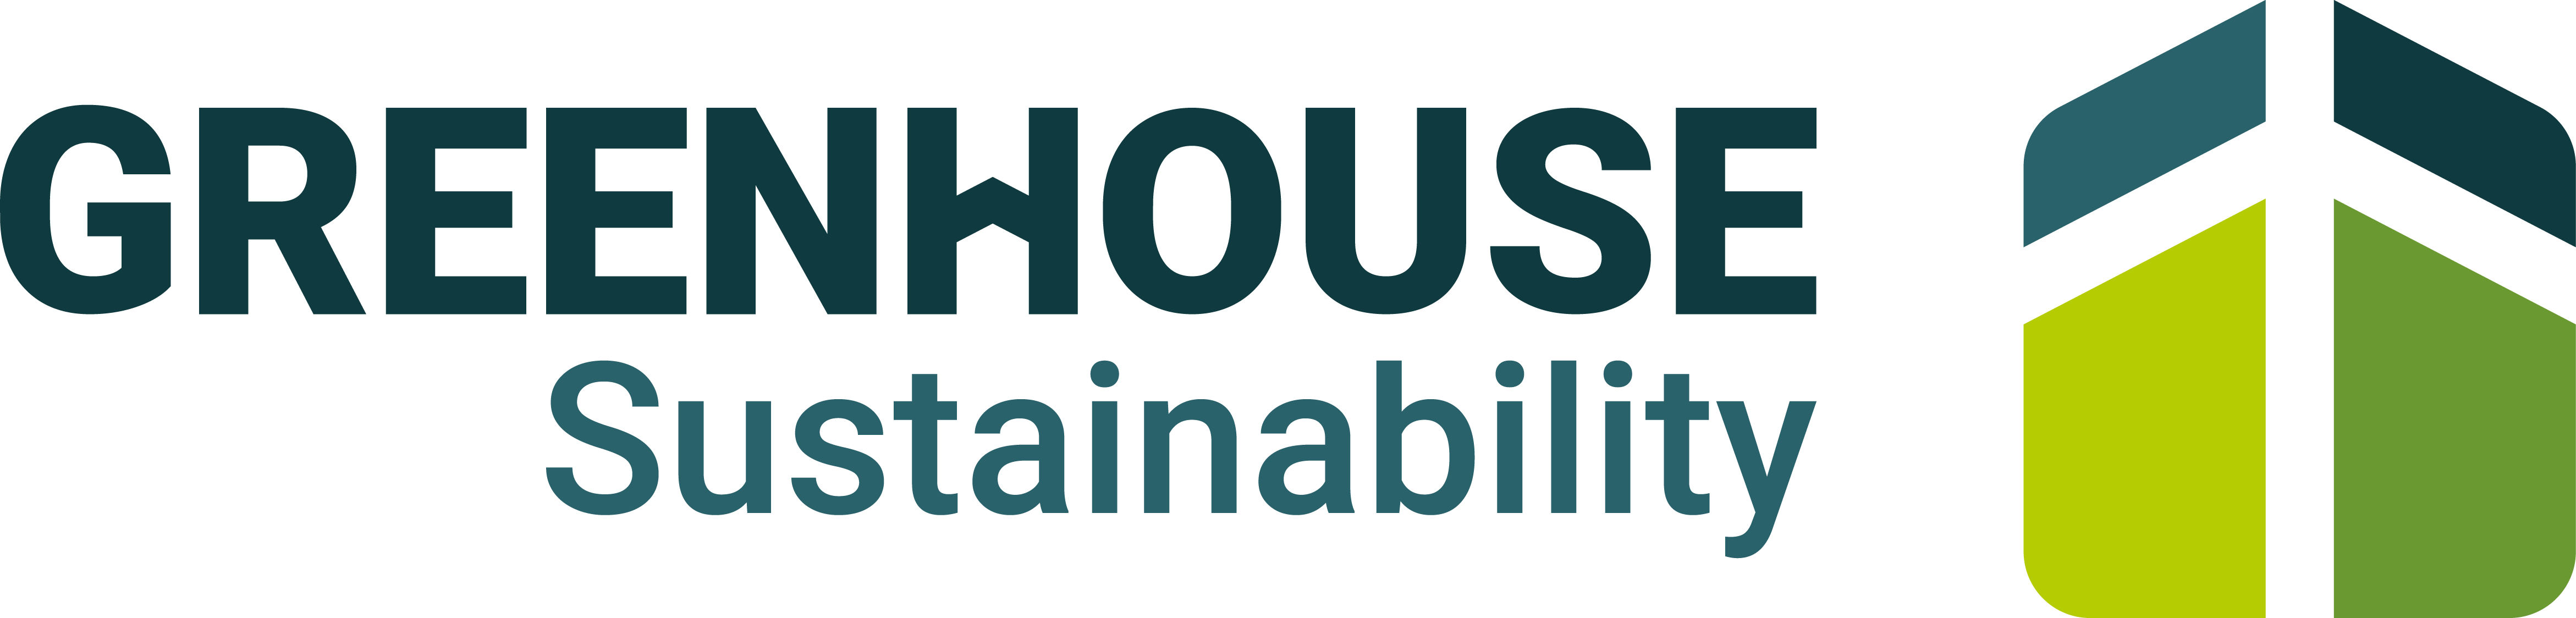 Logo Greenhouse Sustainability